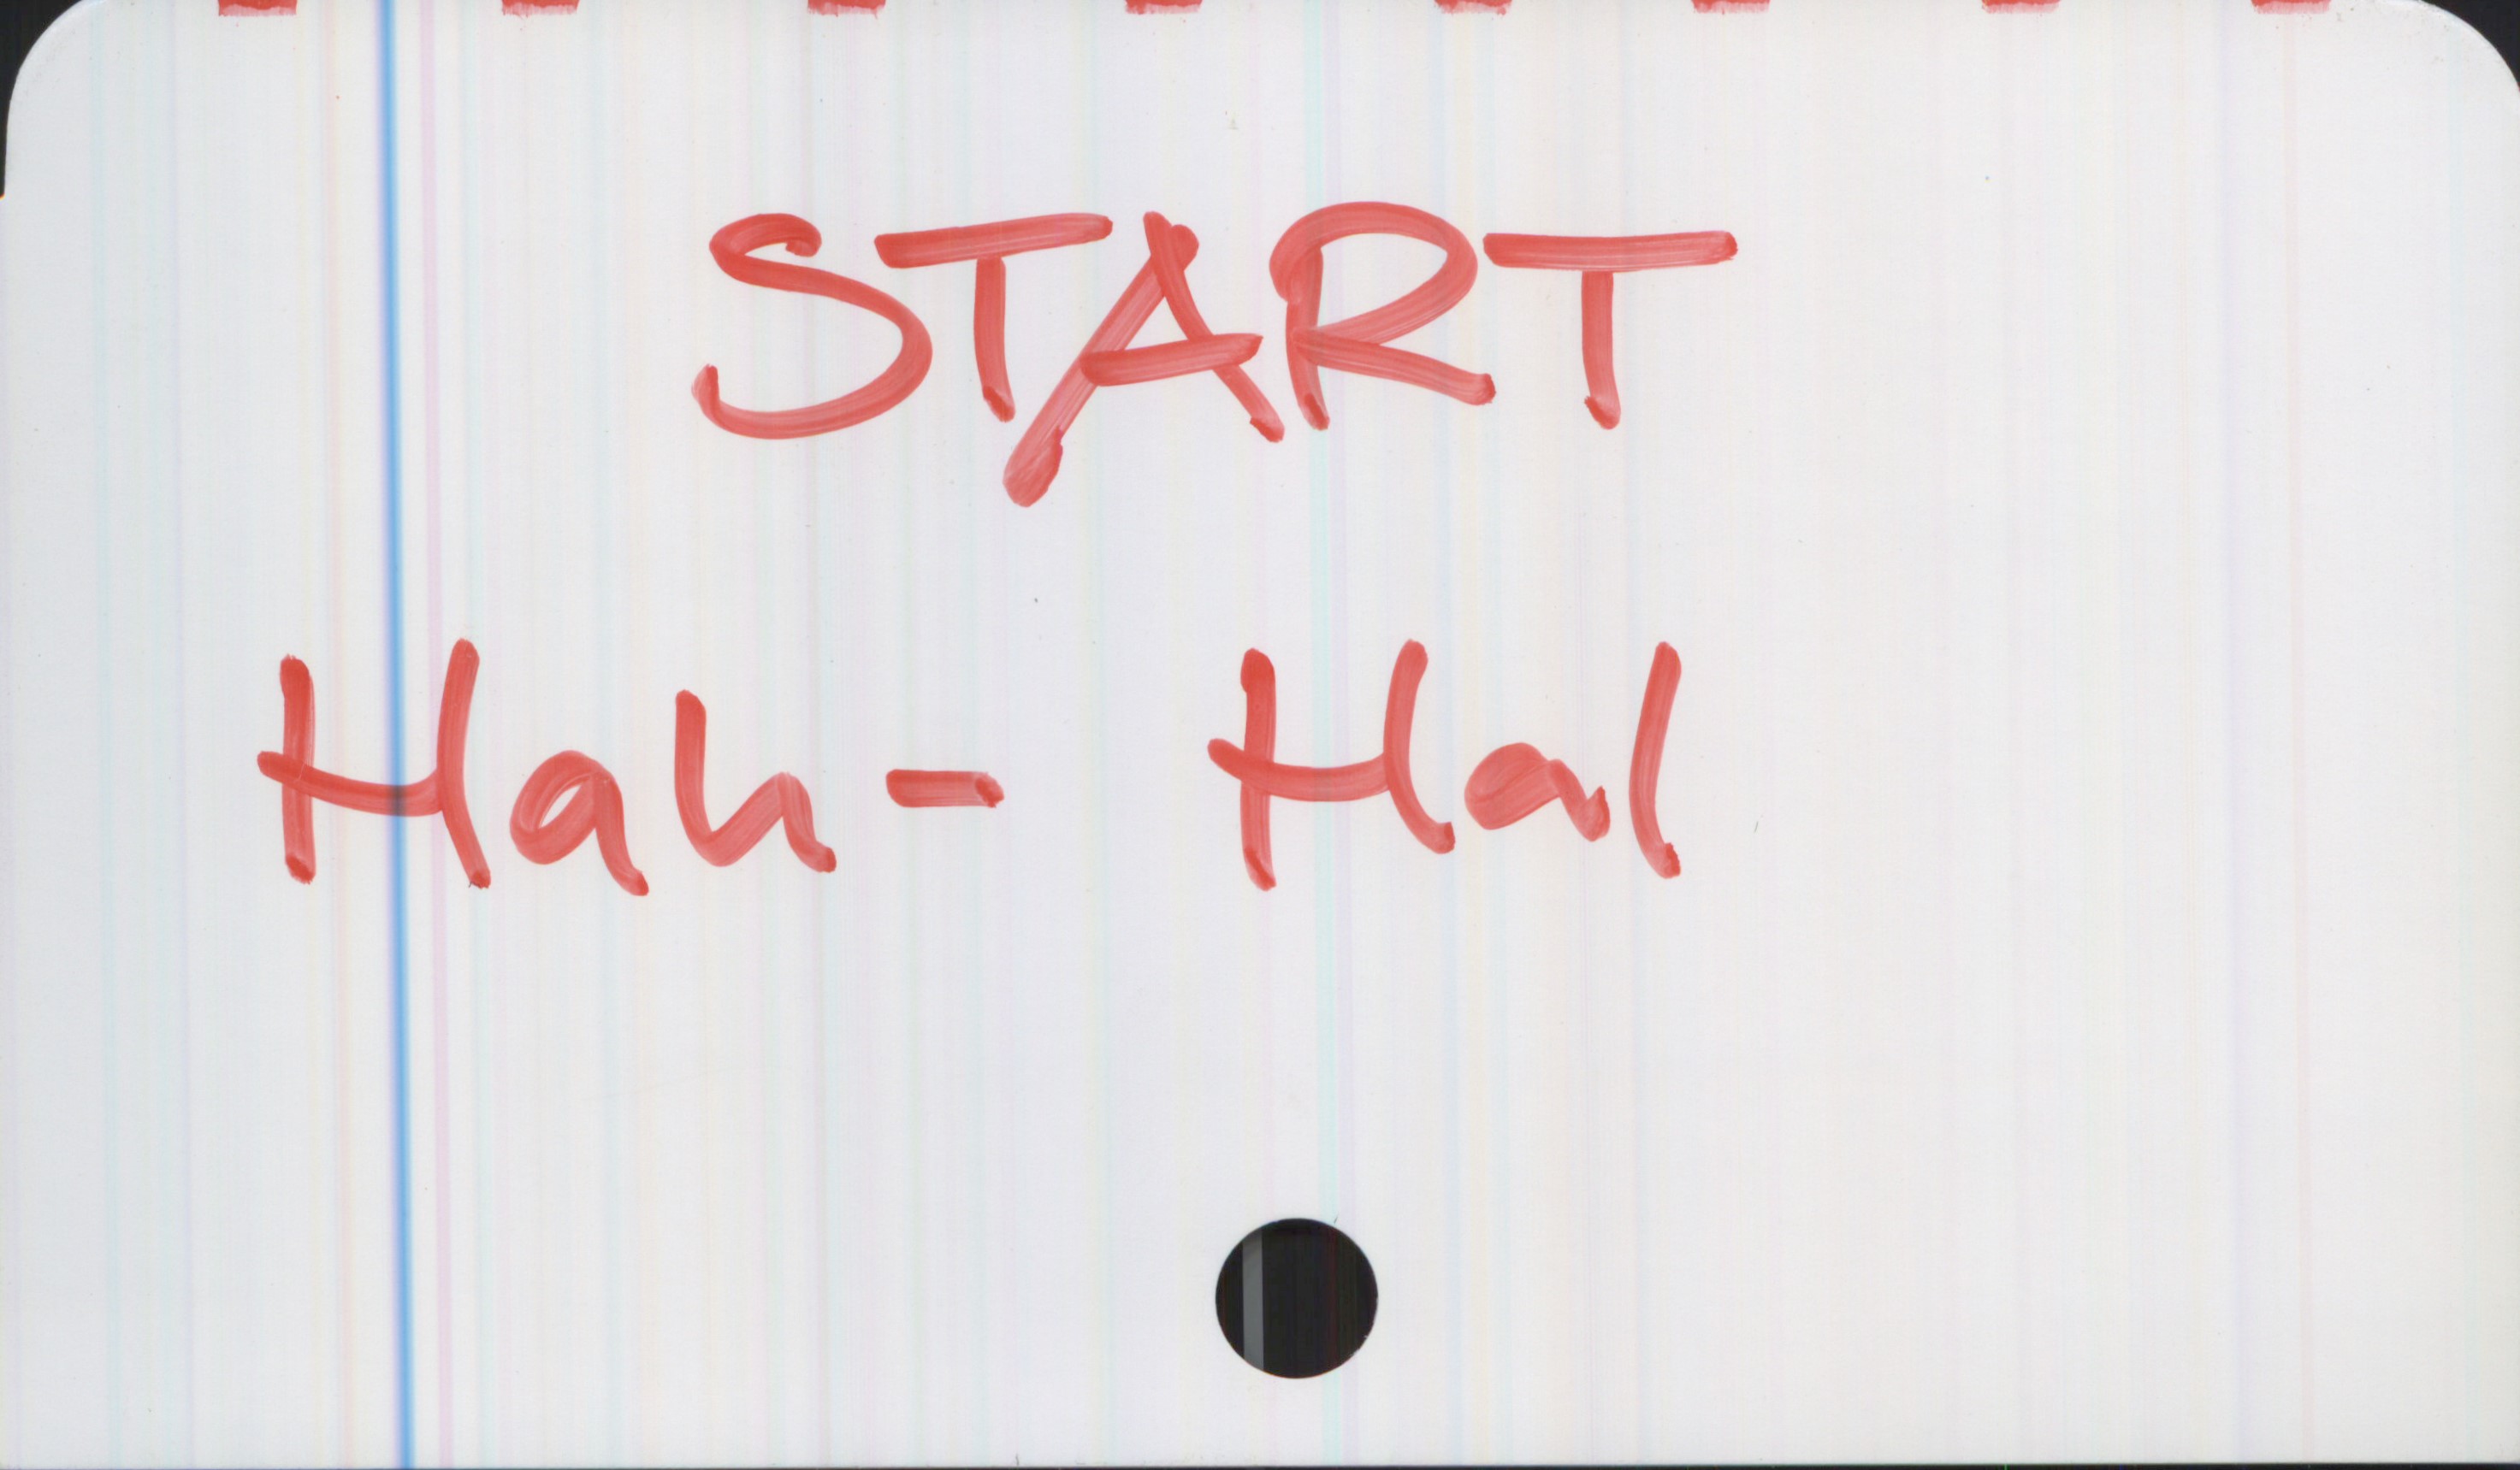 Start Start
Hah-Hal